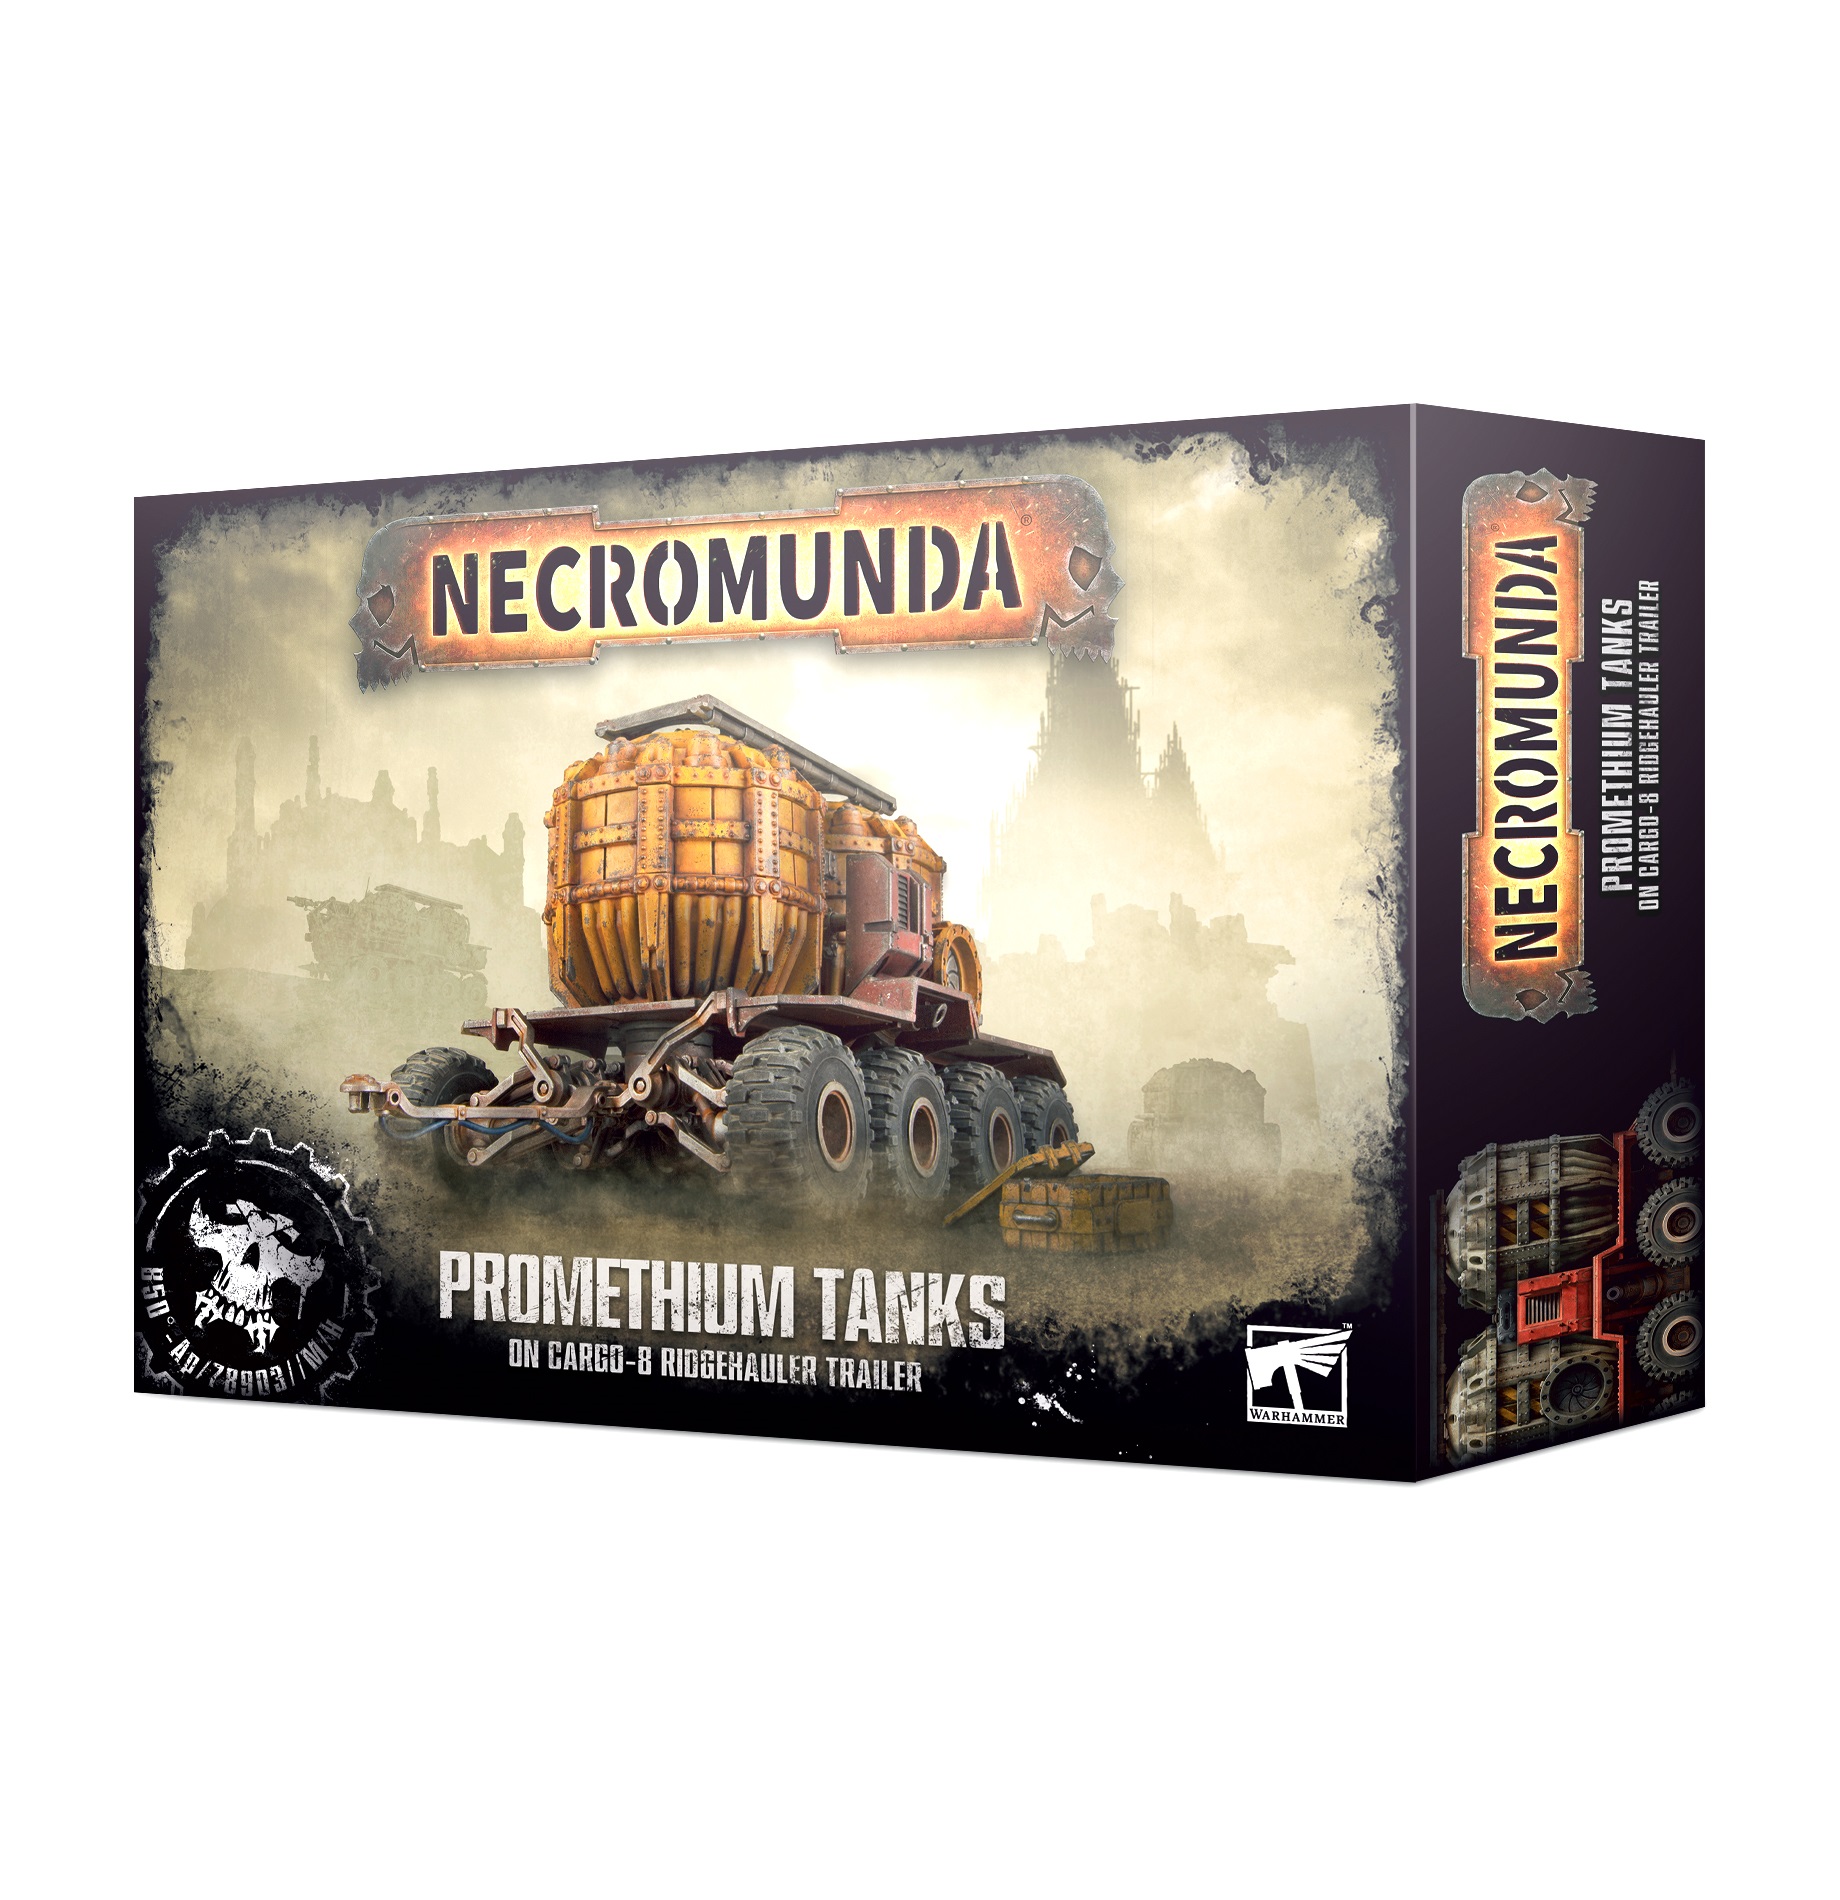 Necromunda: Promethium Tanks on Cargo 8 Trailer